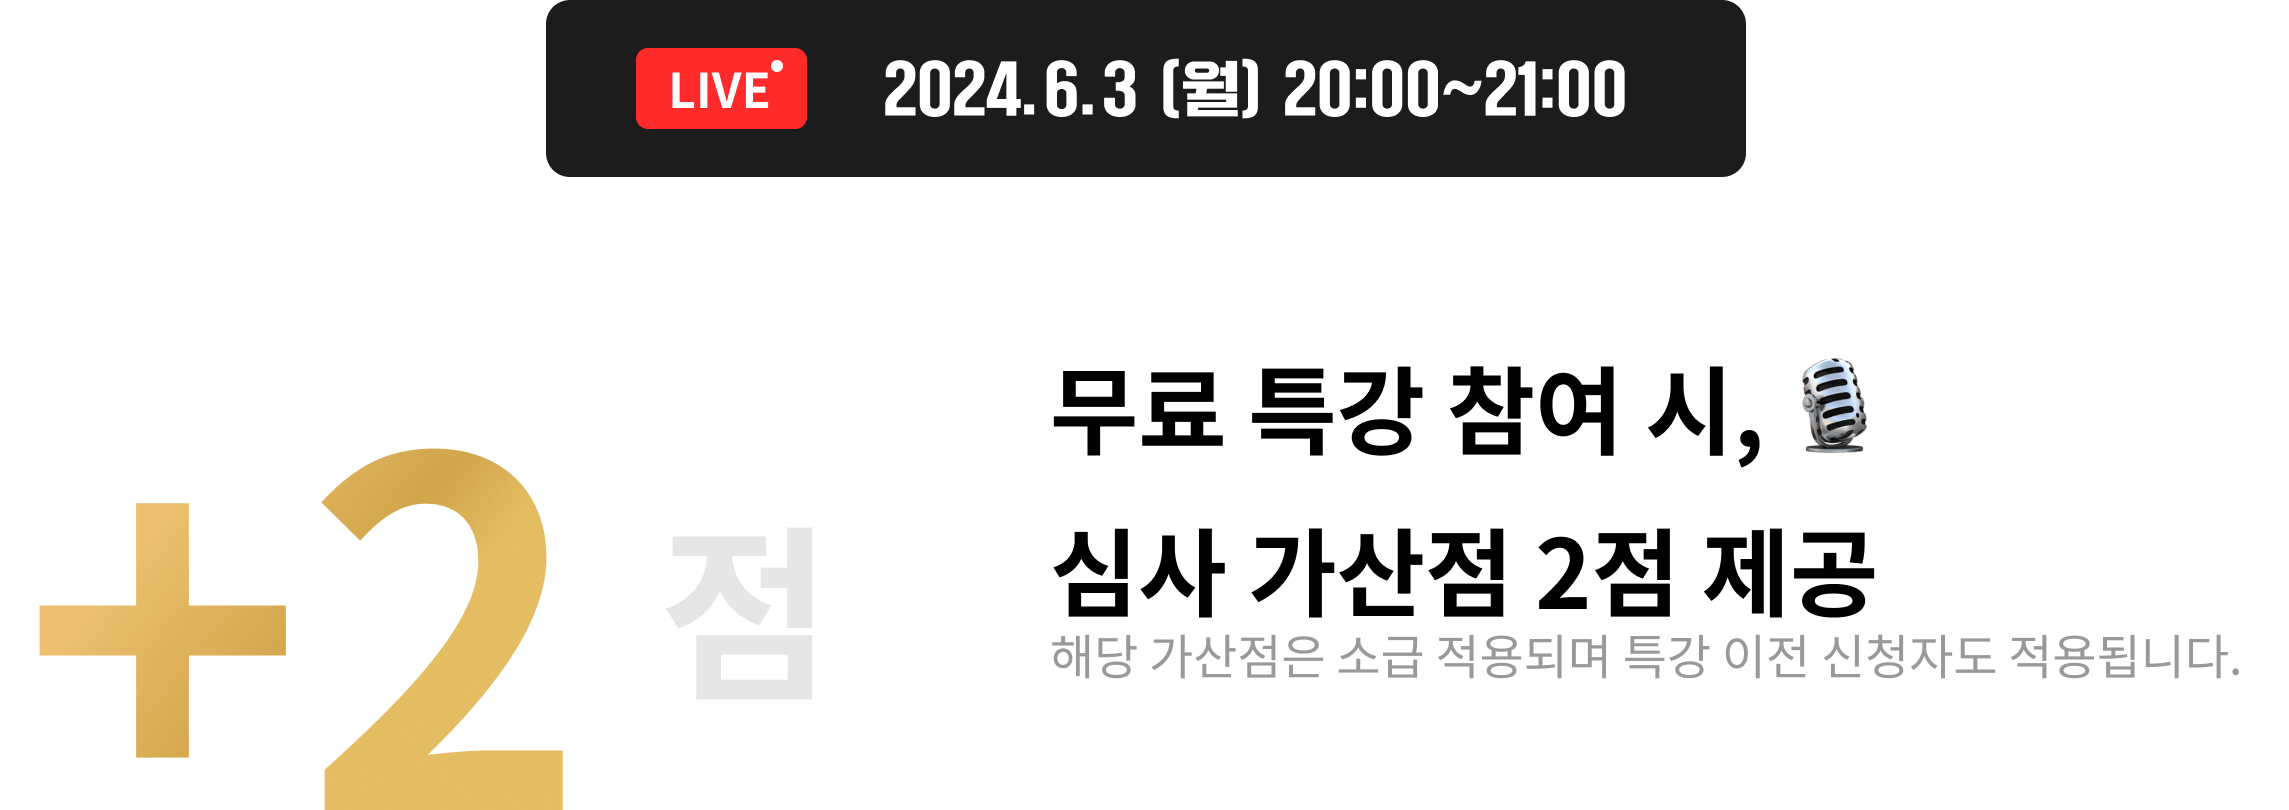 2024.5.16 (목) 20:00~21:00